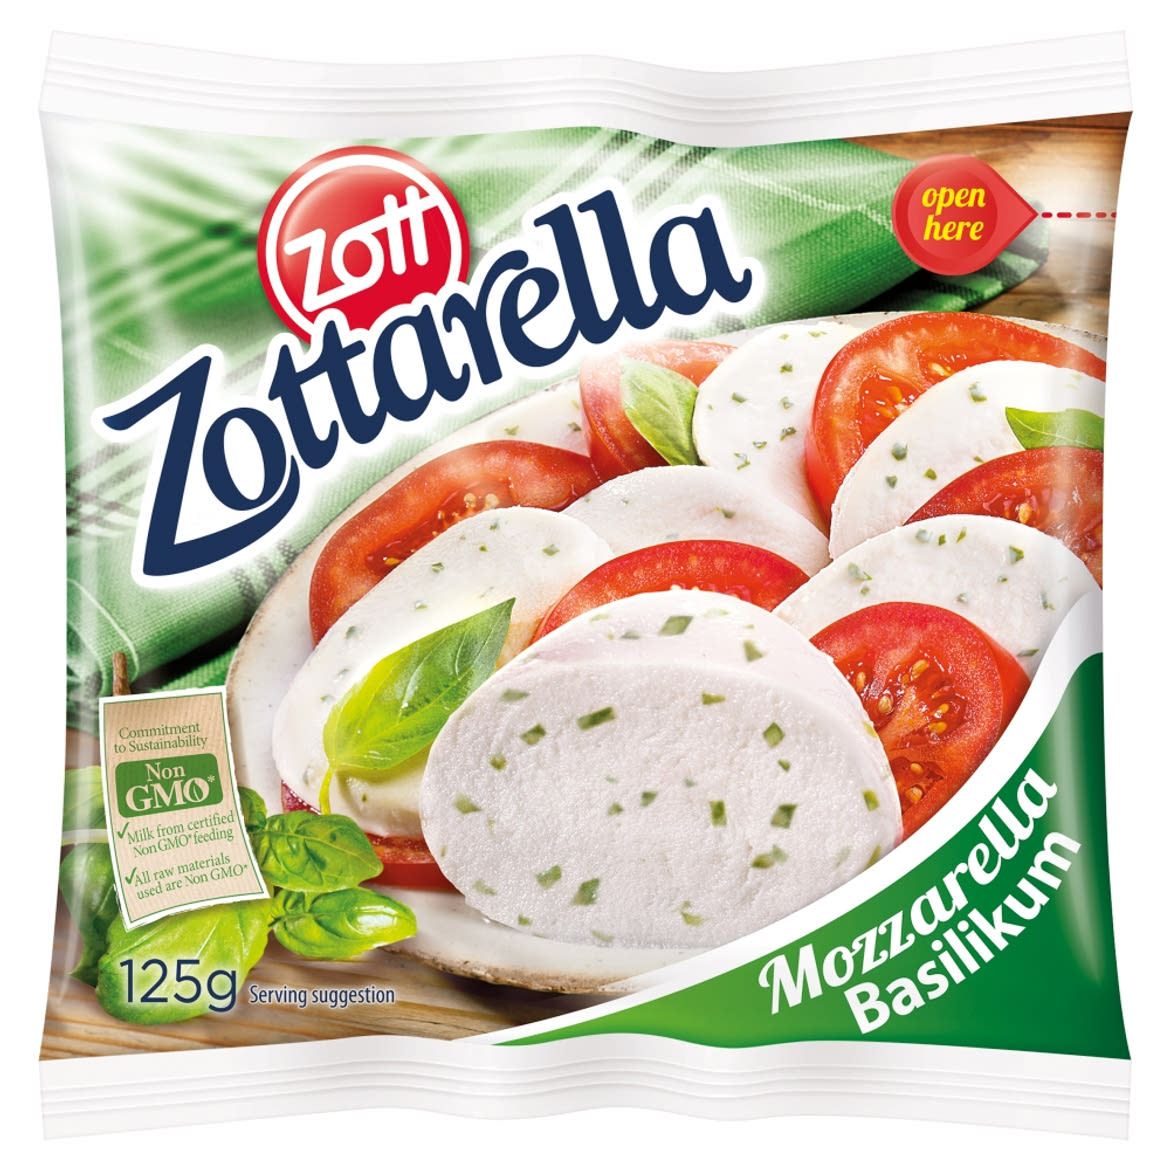 Zott Zottarella zsíros, lágy, bazsalikomos mozzarella sajt 125 g